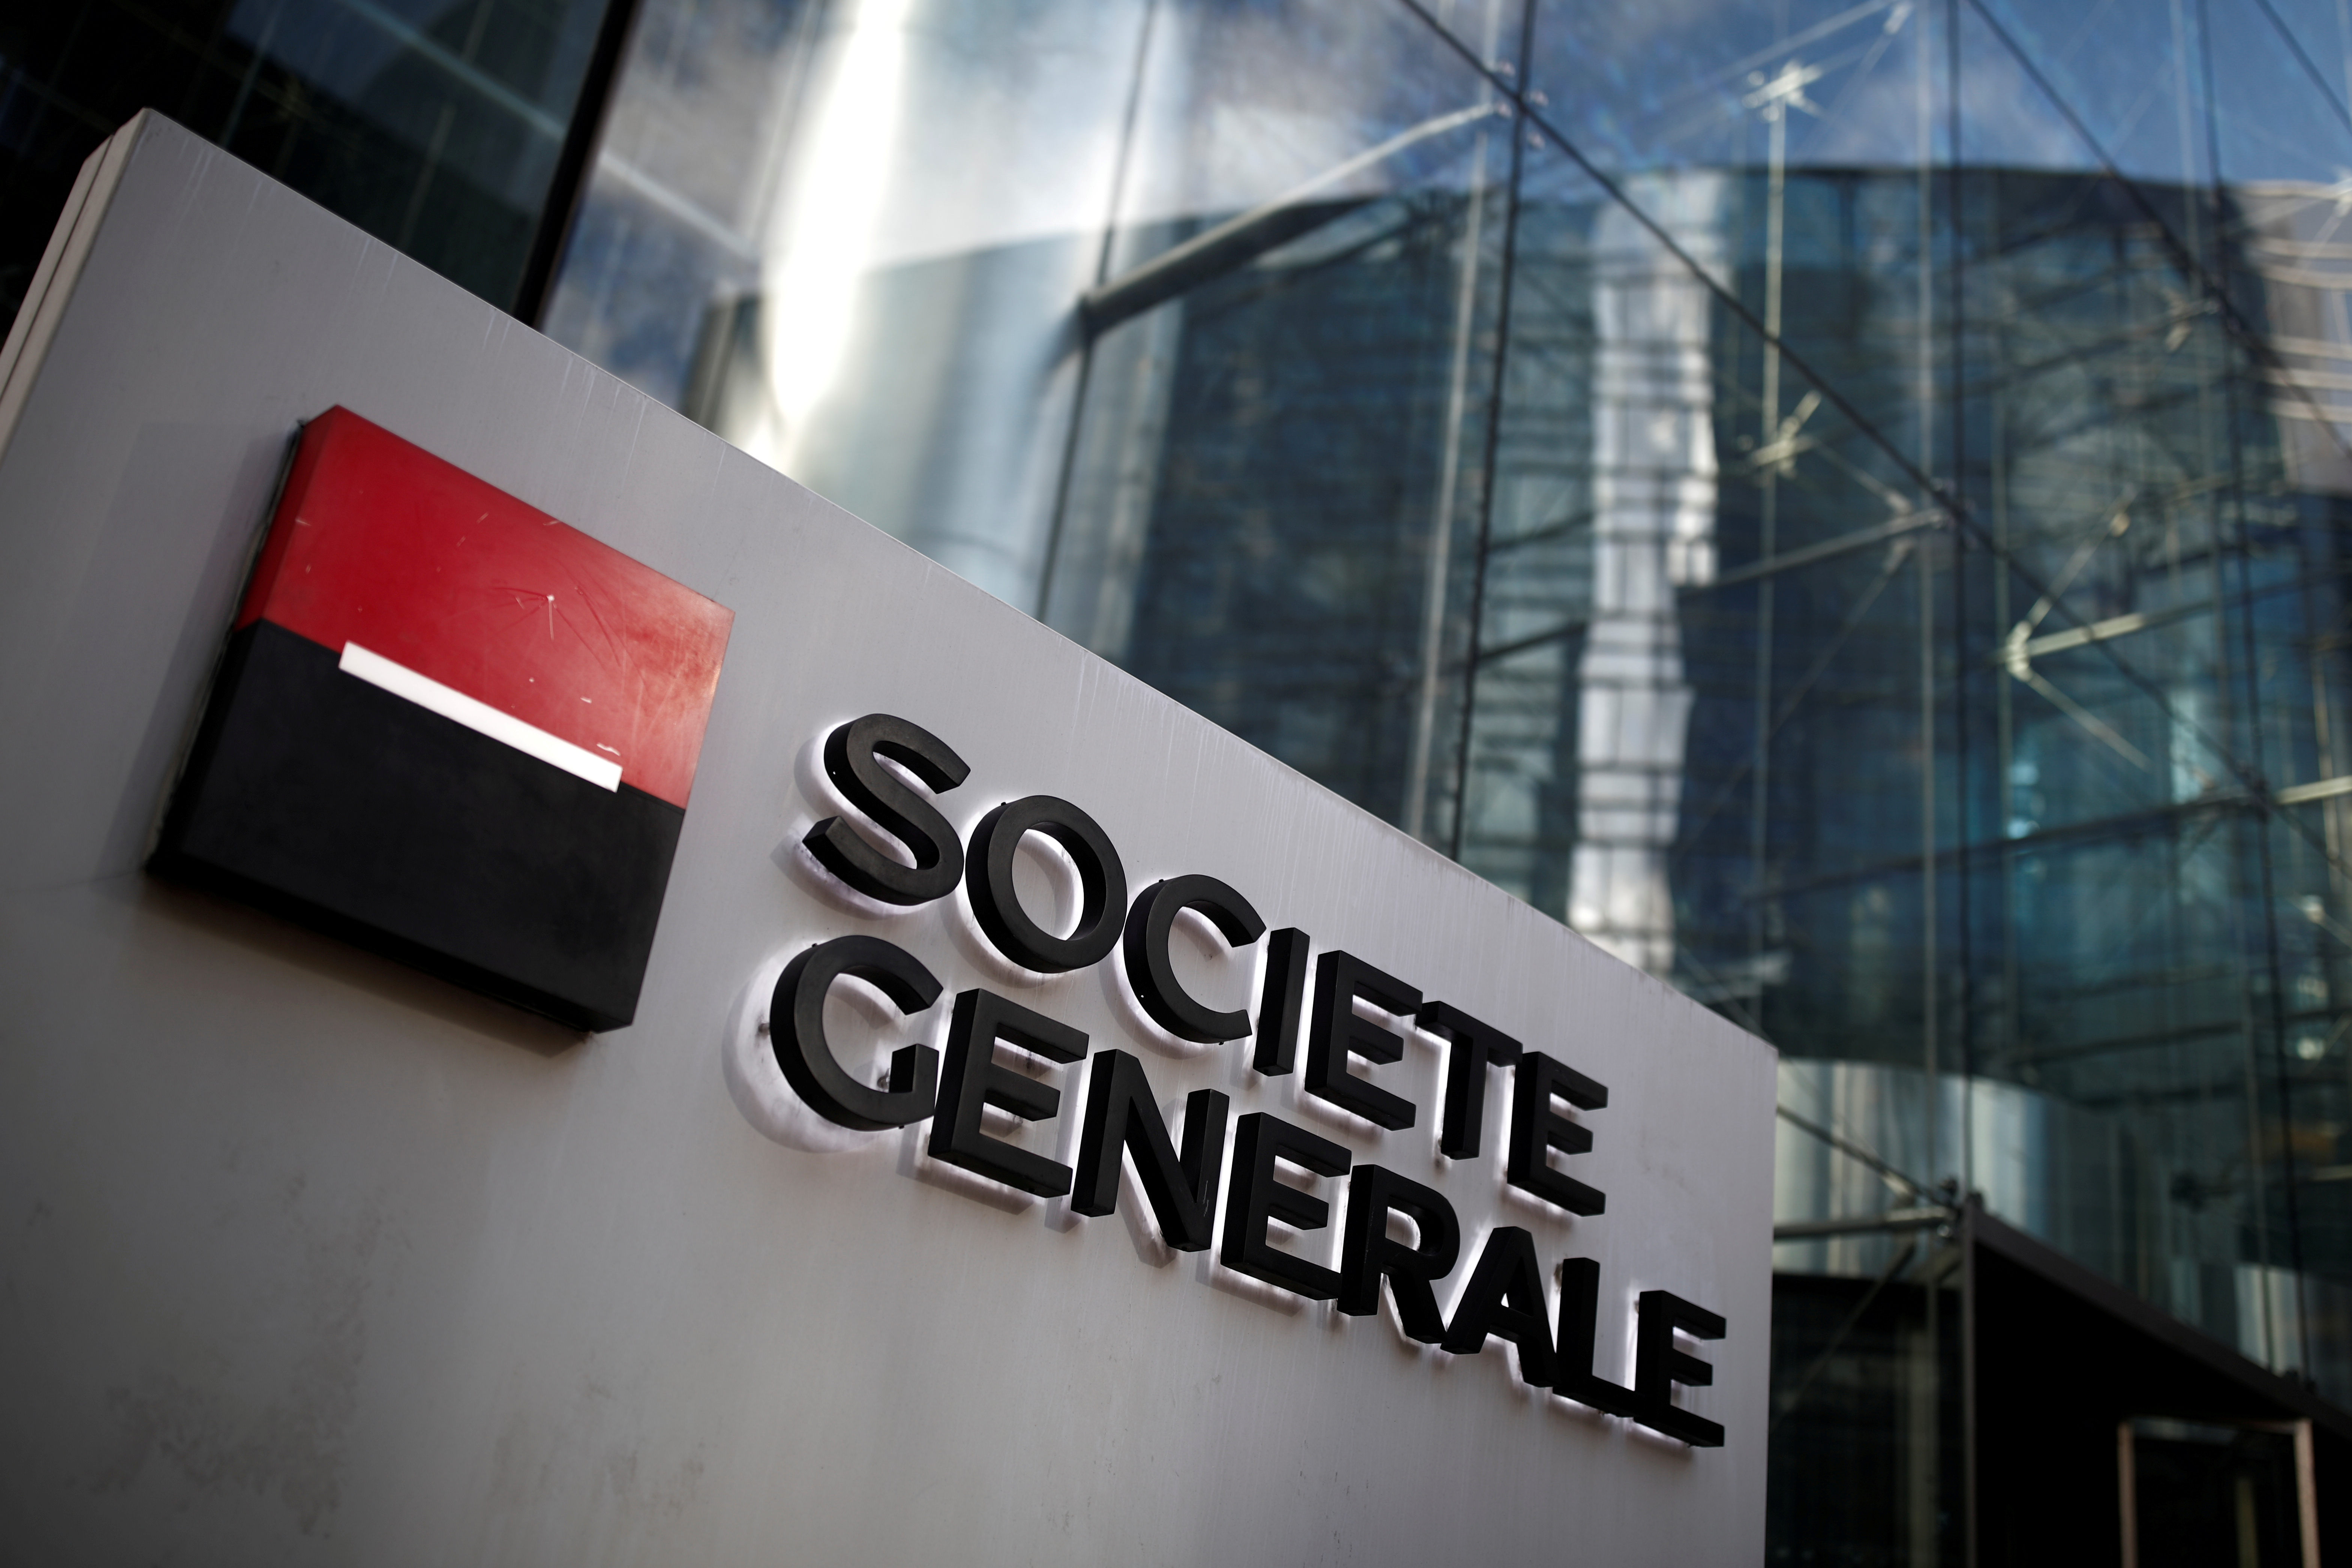 Société Générale cède sa filiale Lyxor (gestion d'actifs) à Amundi pour 825 millions d'euros